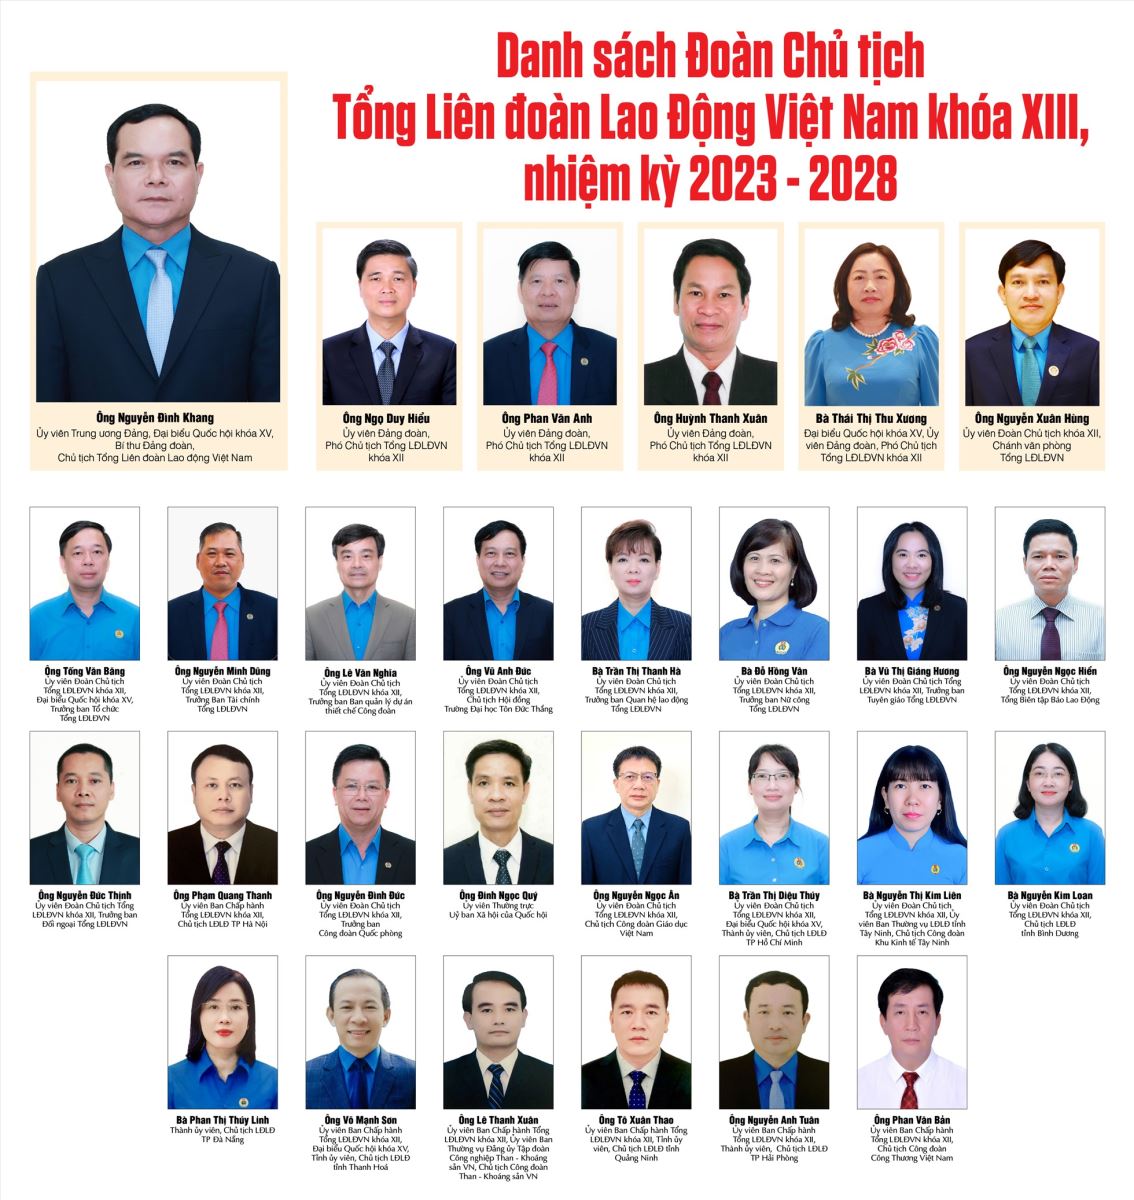 Danh sách các đại biểu trúng cử Đoàn Chủ tịch Tổng Liên đoàn Lao động Việt Nam khoá XIII